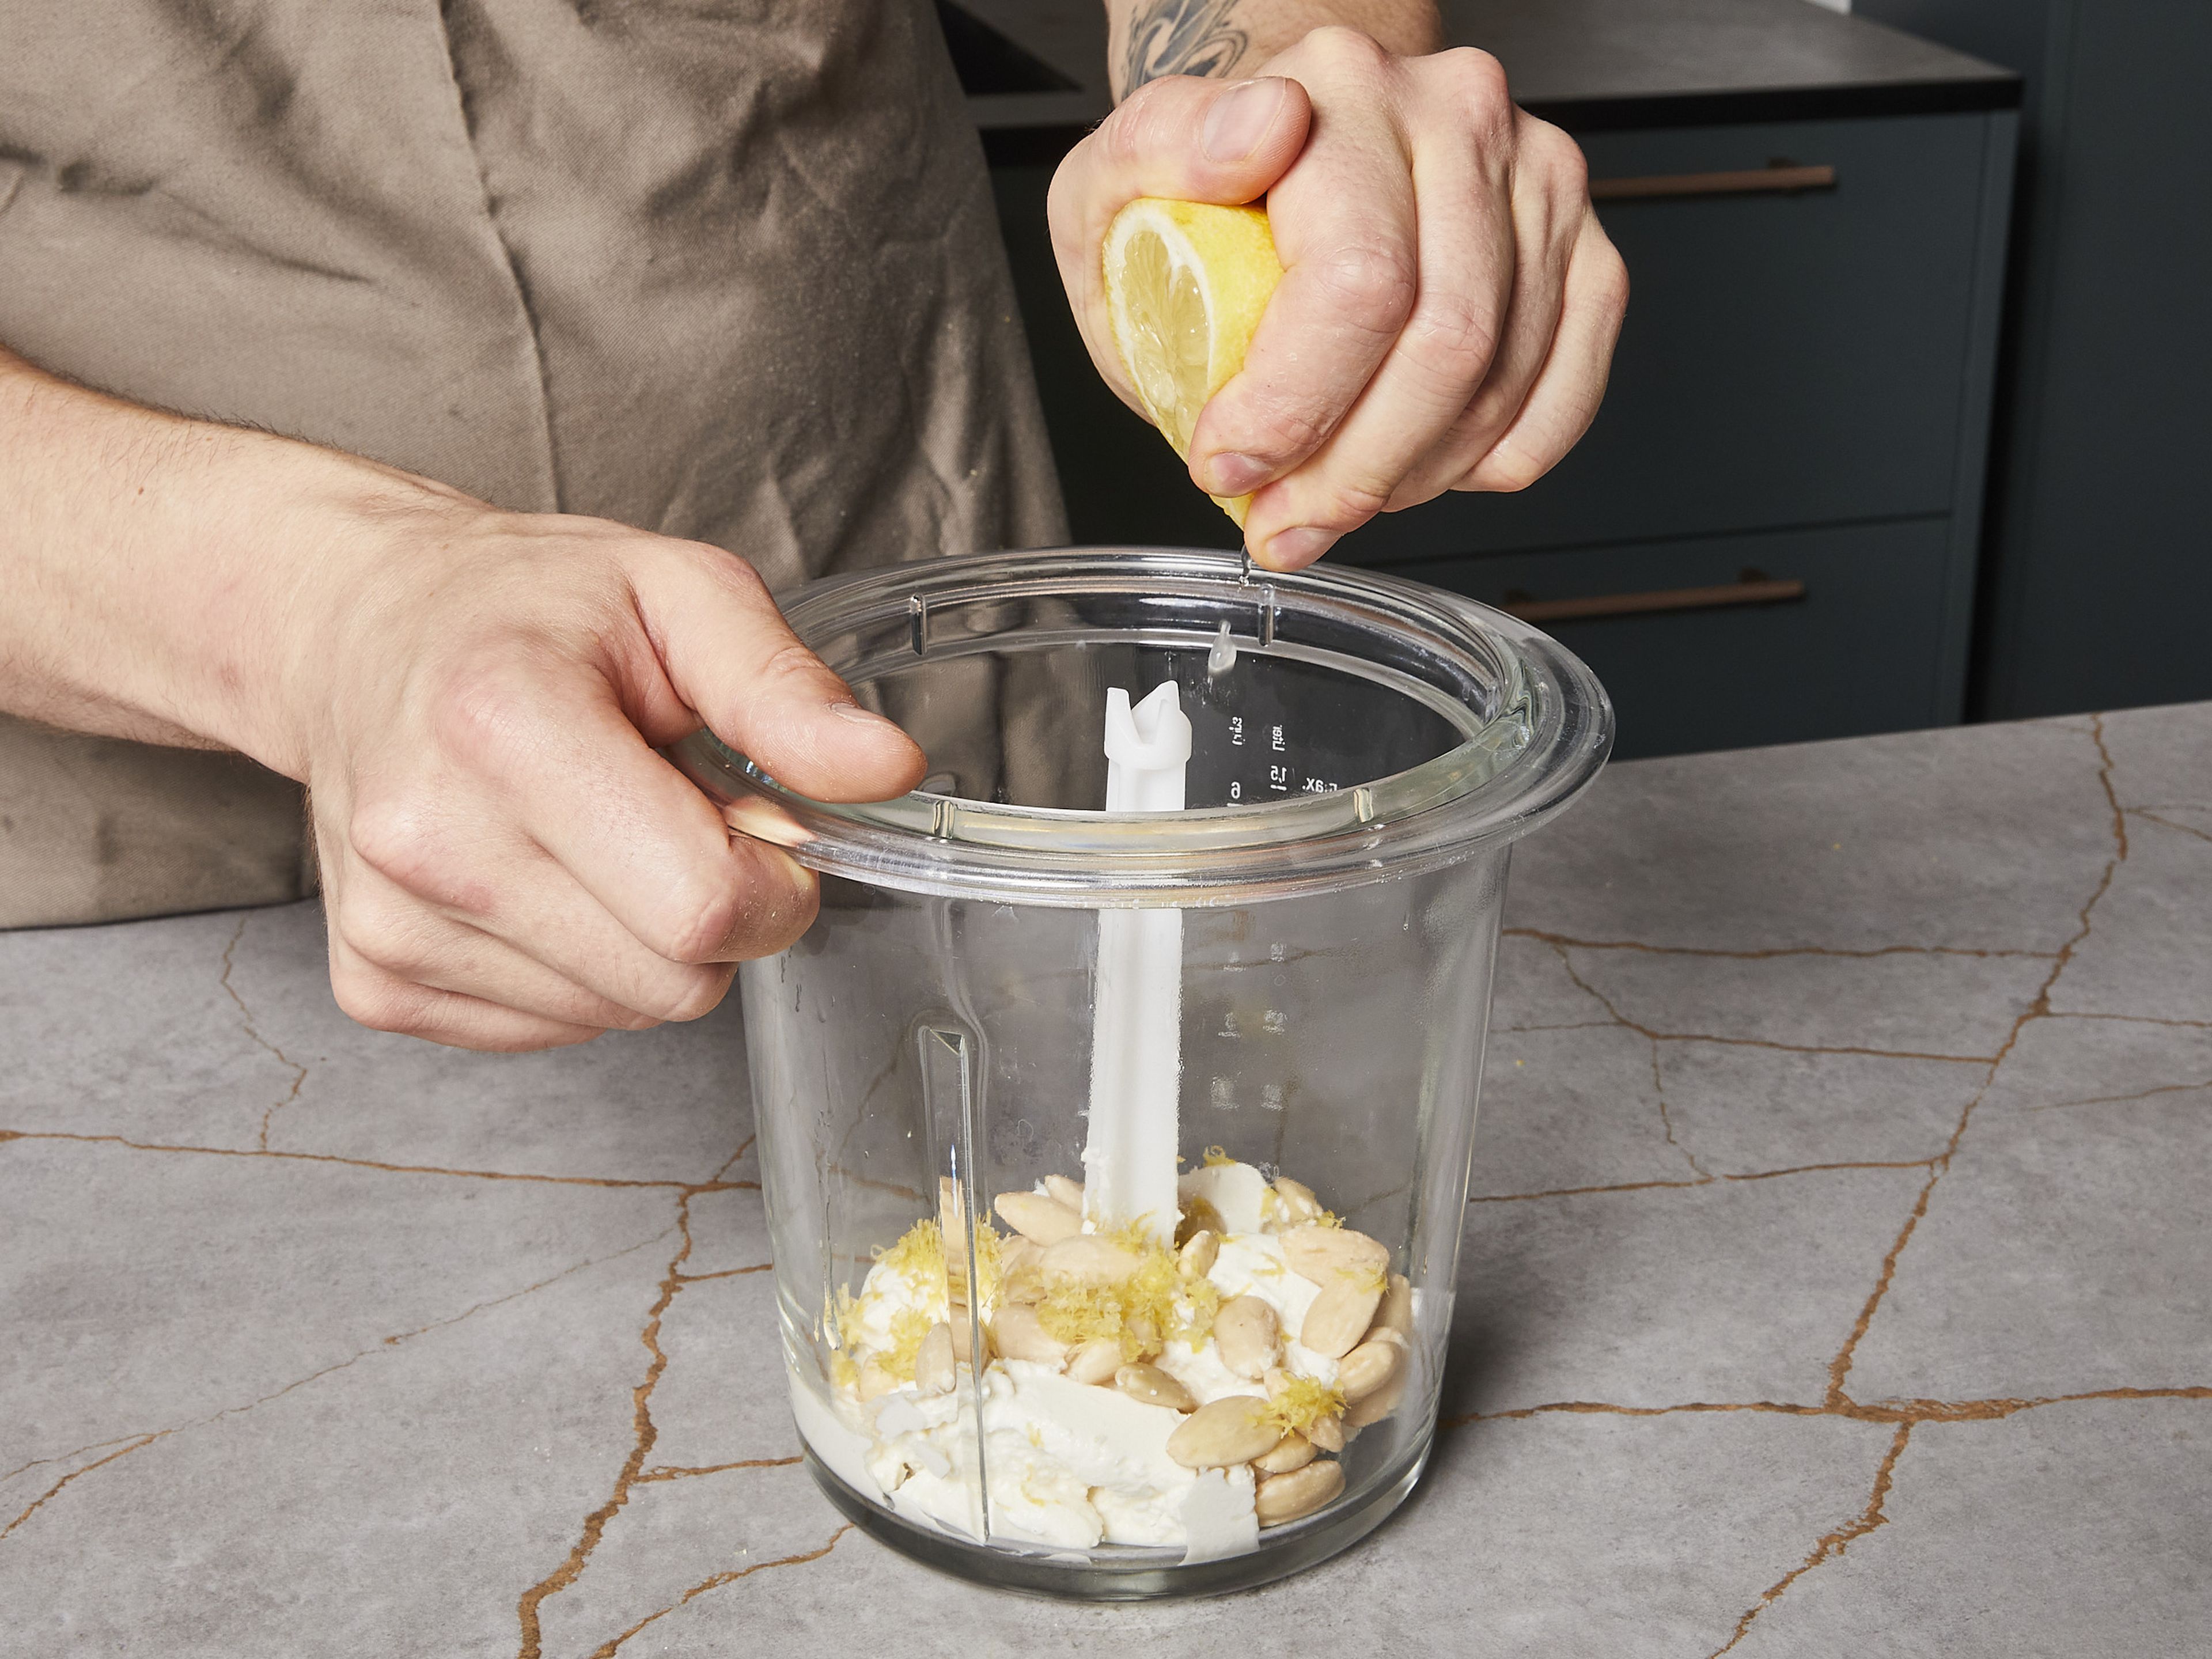 In der Zwischenzeit den Basilikum-Ricotta-Dip zubereiten. Dafür Basilikum fein hacken sowie Ricotta und Mandeln in einen Mixer geben. 1 TL Zitronenschale abreiben und dazugeben. Die Zitrone halbieren und den Saft auspressen, dann zur Ricotta-Mischung geben. Alles in einem Standmixer oder mit einem Stabmixer pürieren. Gehackten Basilikum und das restliche Olivenöl untermischen. Mit Salz und Pfeffer abschmecken und beiseitestellen.